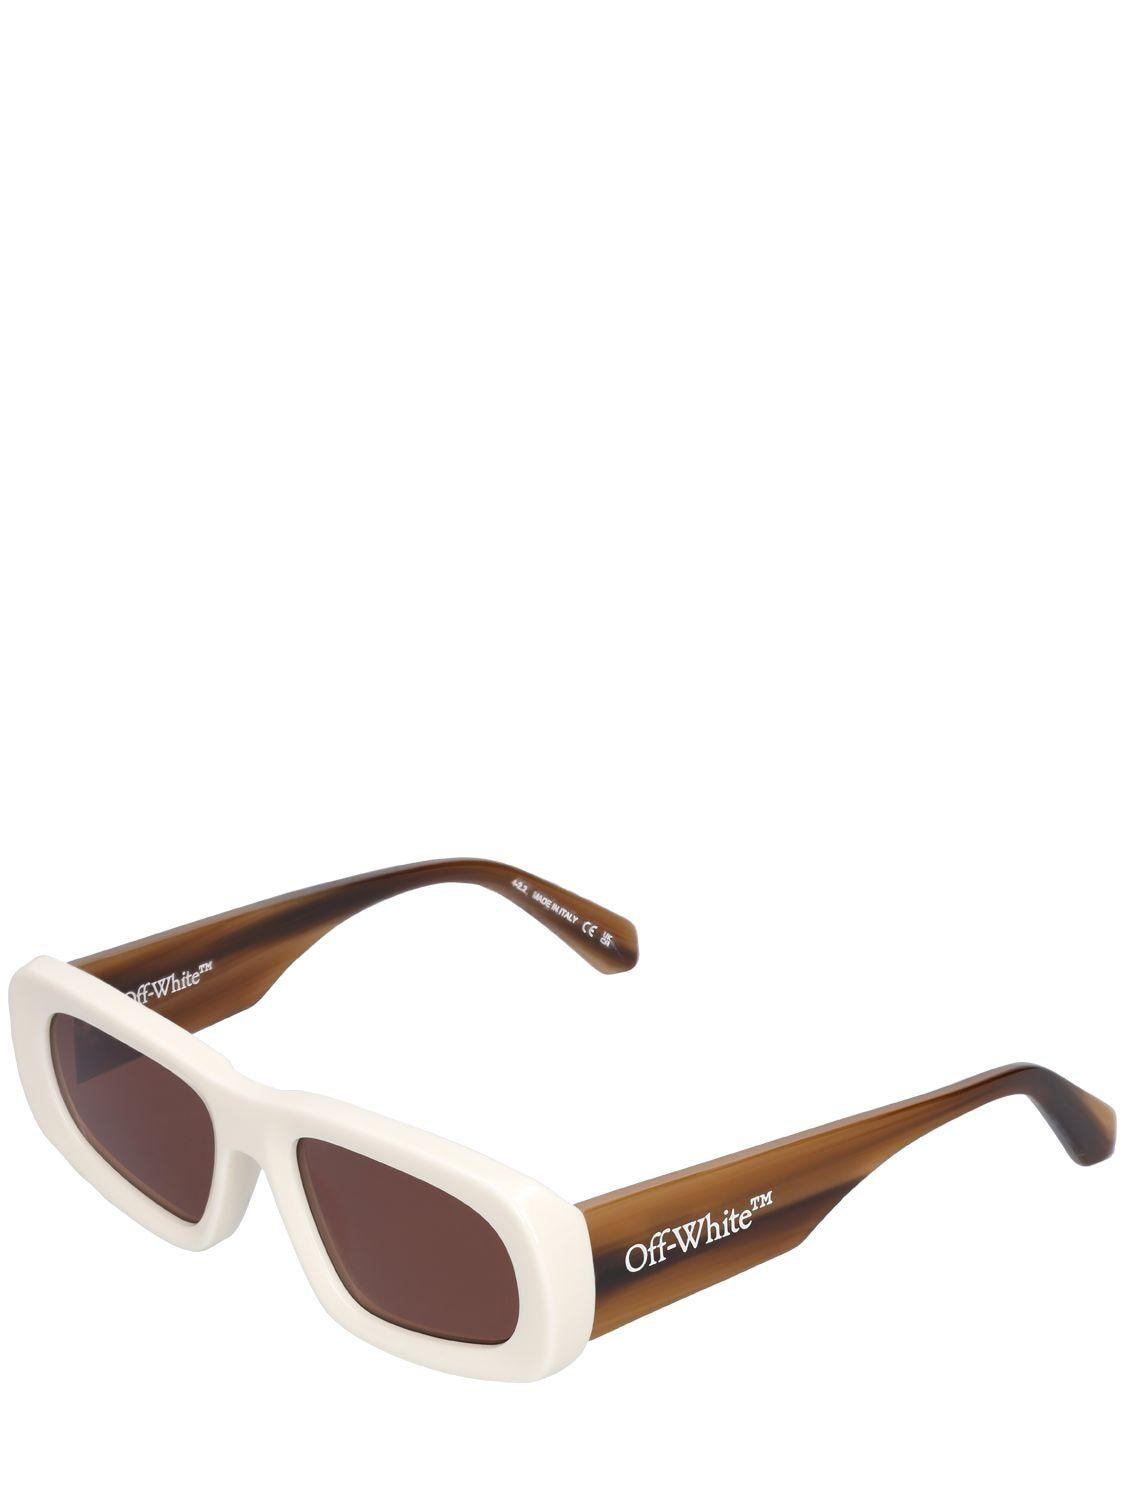 Off-White Austin Sunglasses